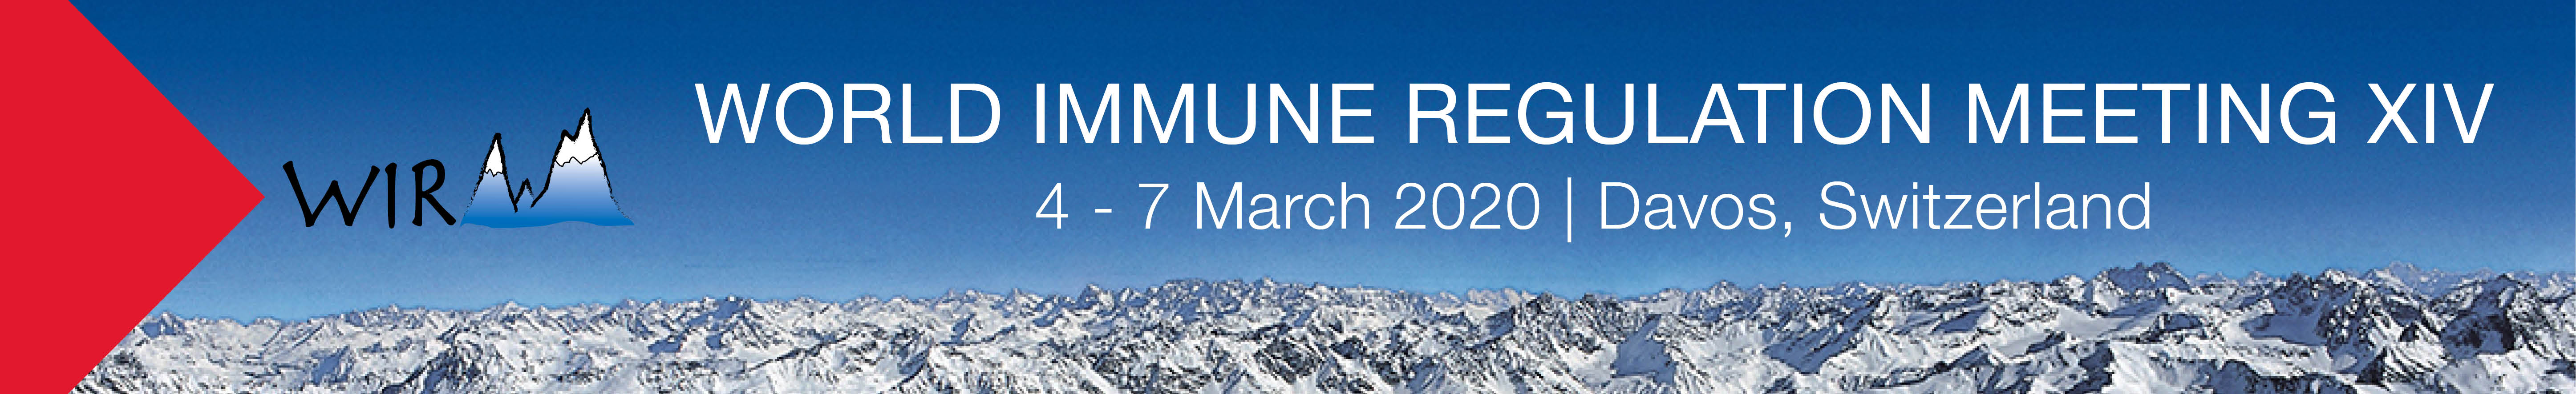 WIRM — World Immune Regulation Meeting XIV 2020